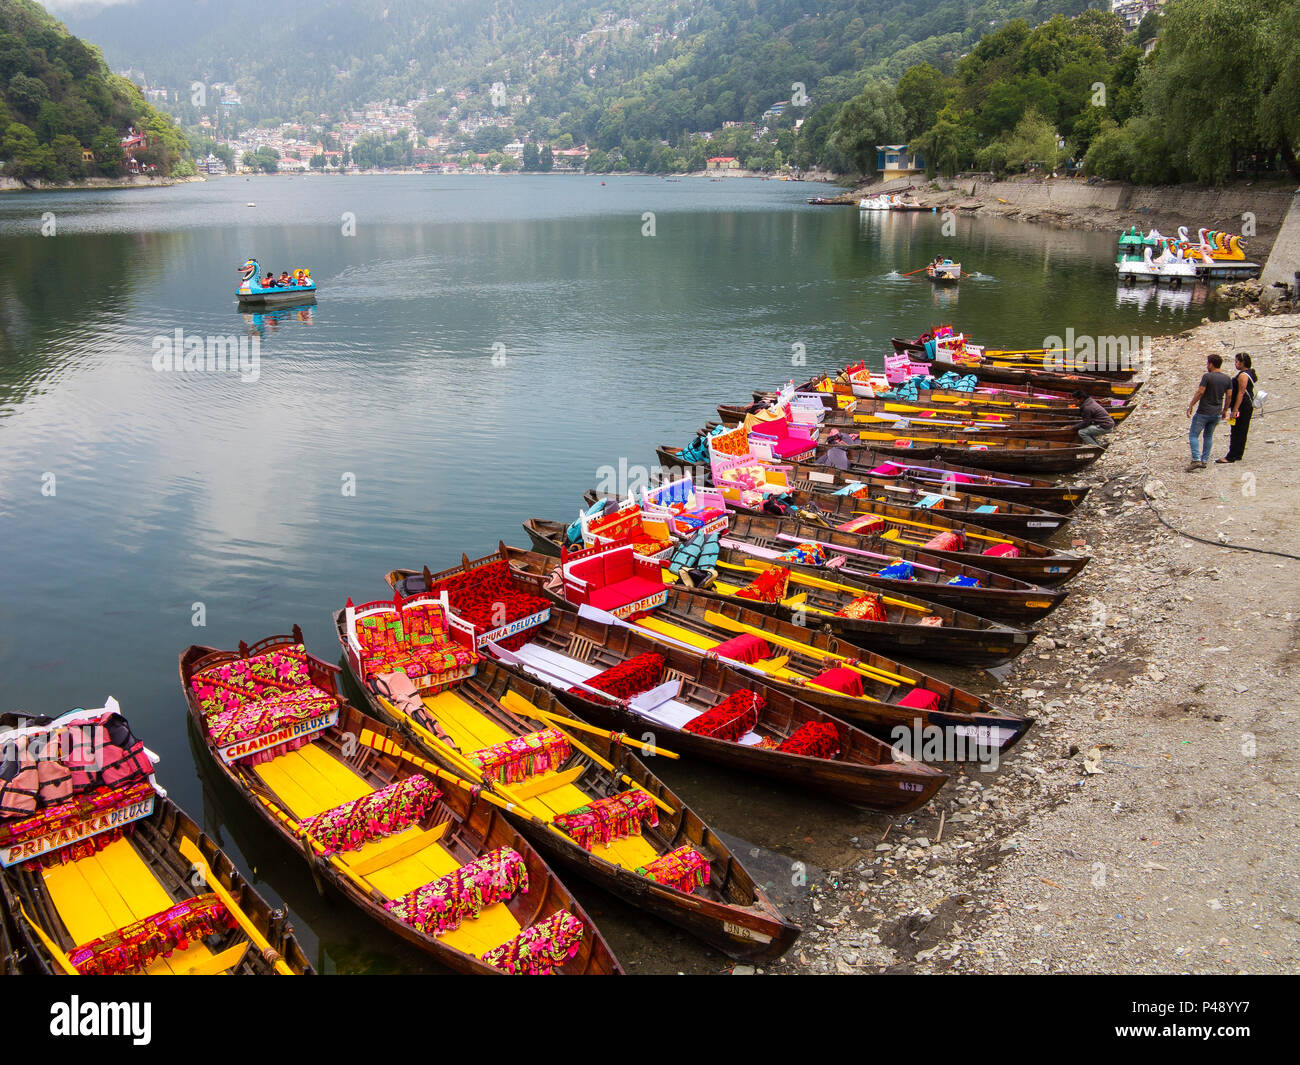 Colorful tourist boats at Nainital Lake, Nainital, Uttarakhand, India Stock Photo